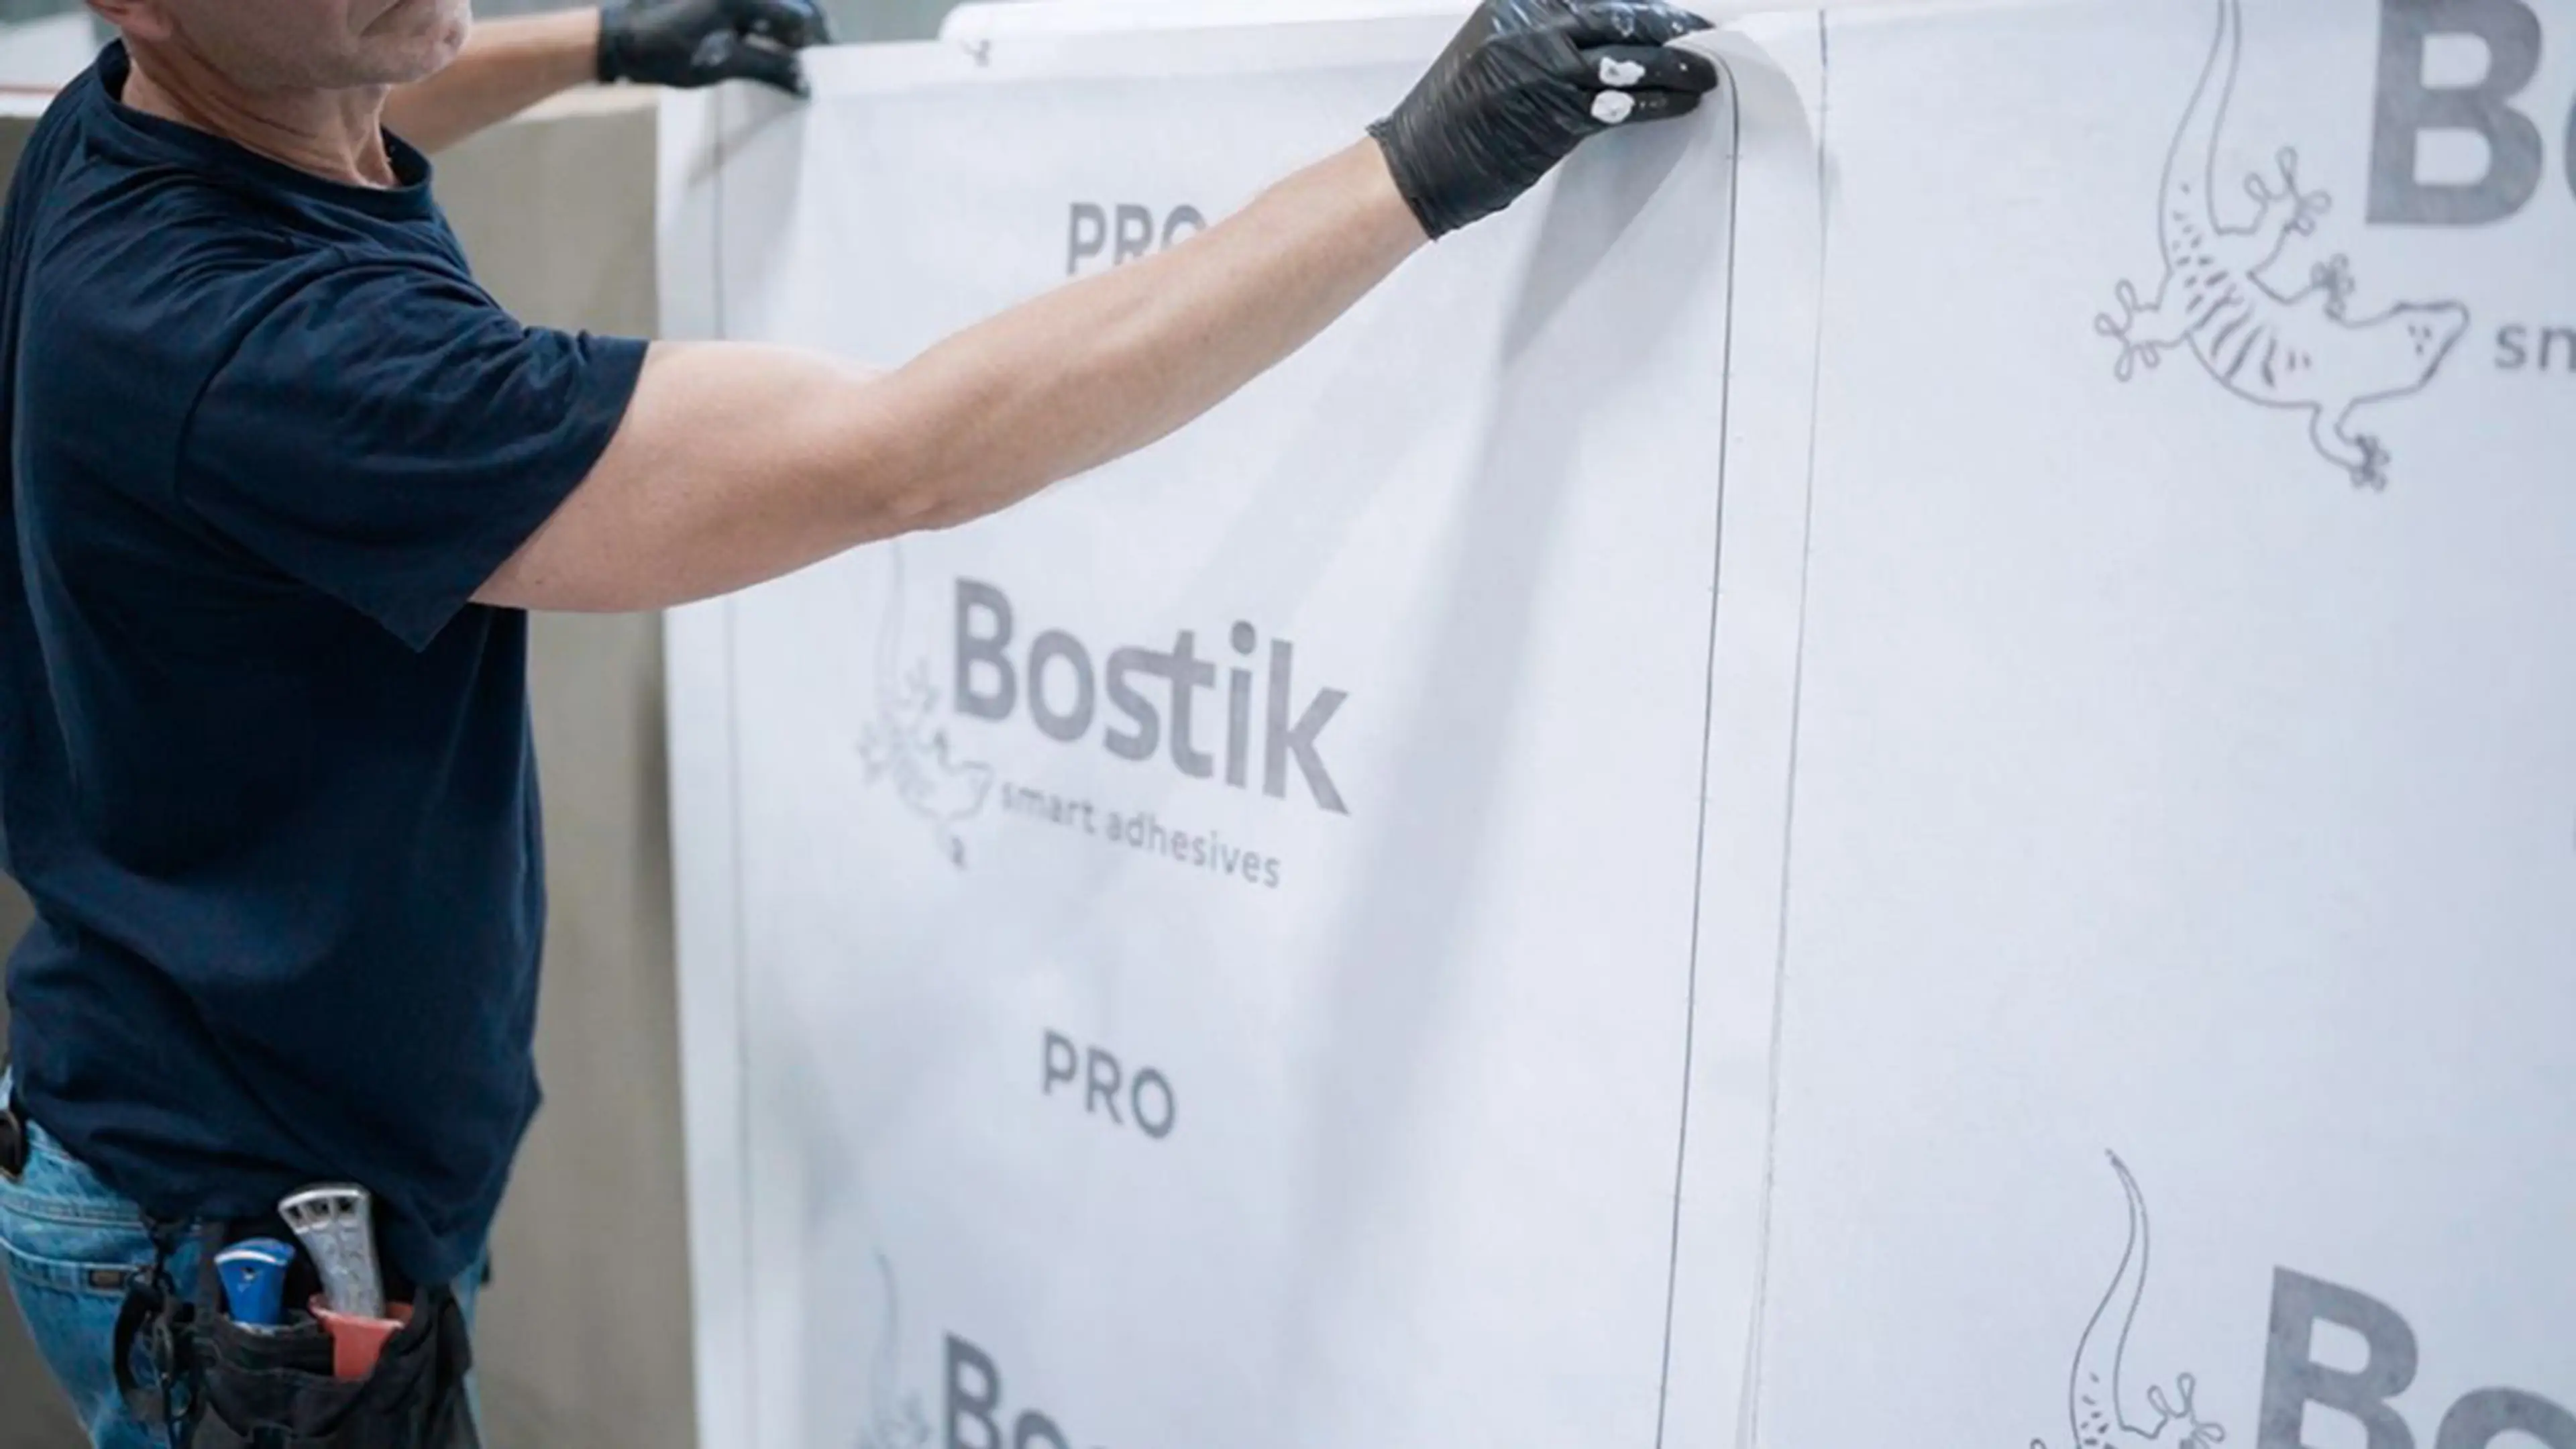 Bostik PRO vanntettingssystem som festes til vegg av mann med hansker.